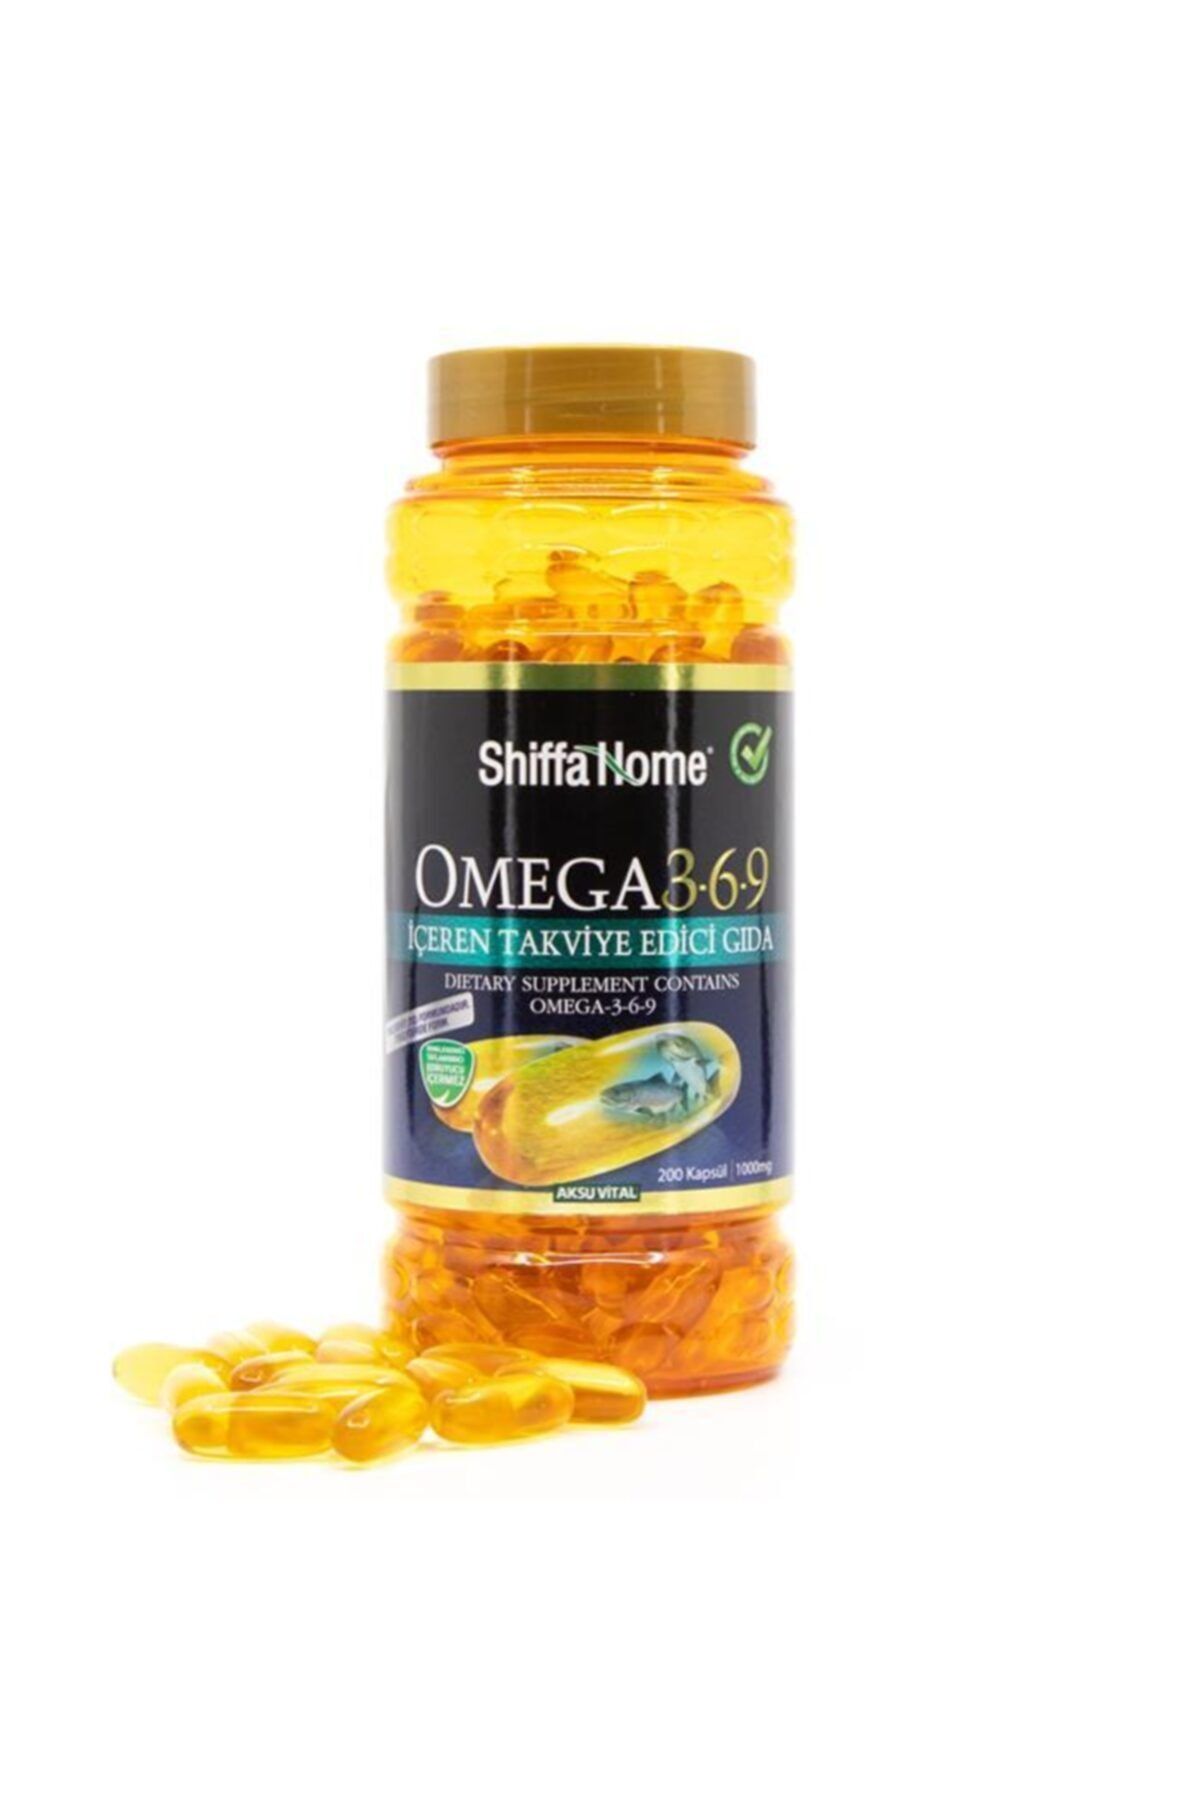 Aksu Vital Omega 3-6-9 Softjel Kapsül 1000 mg 200 Adet